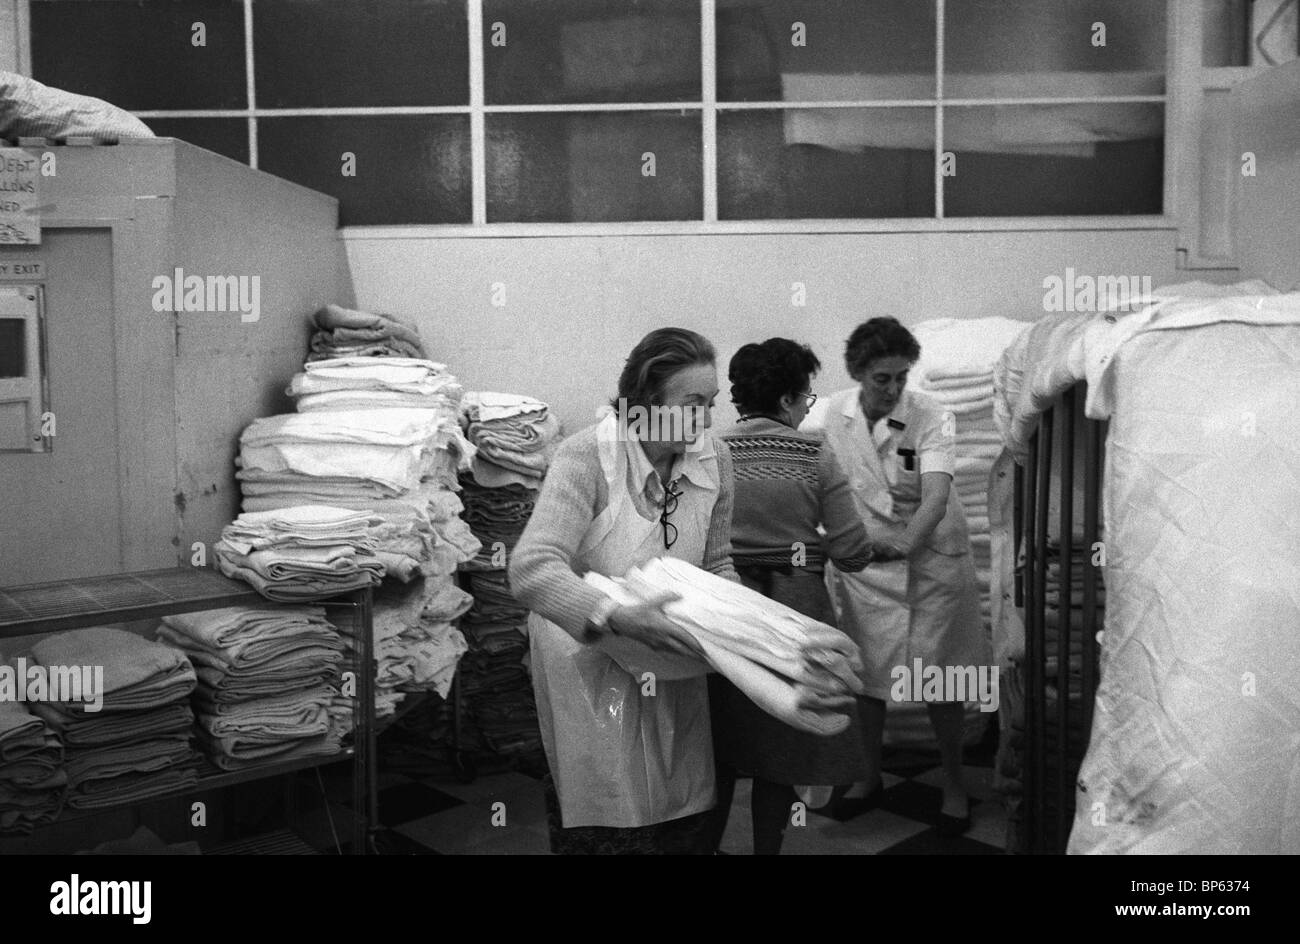 Winter der Unzufriedenheit London 1979 UK. Familie und Freunde kommen herein, um den Angestellten zu helfen, nicht zu schlagen. Westminster Krankenhaus Waschraum. 1970er Jahre HOMER SYKES Stockfoto